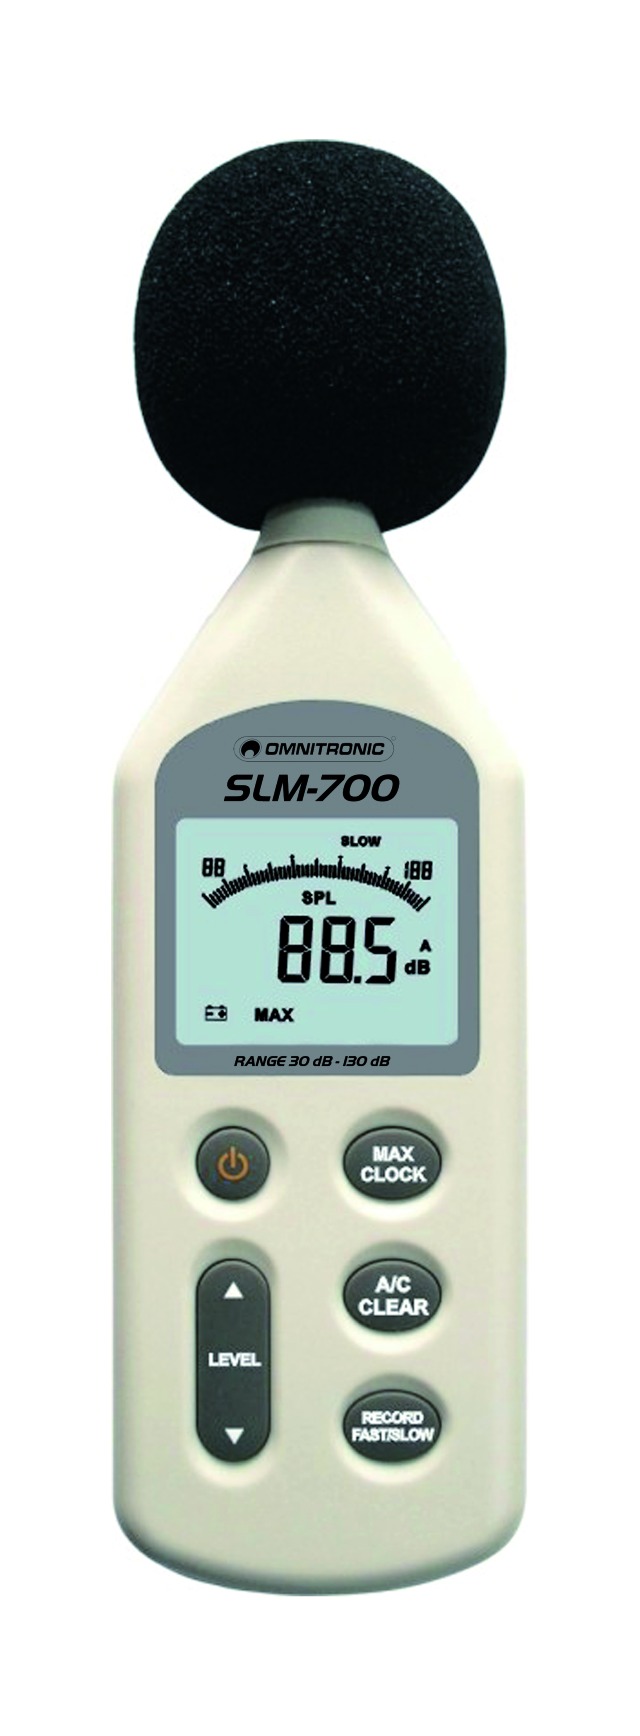 Měřič úrovně digitálního zvuku se sofwarovým souborem Omnitronic SLM-700